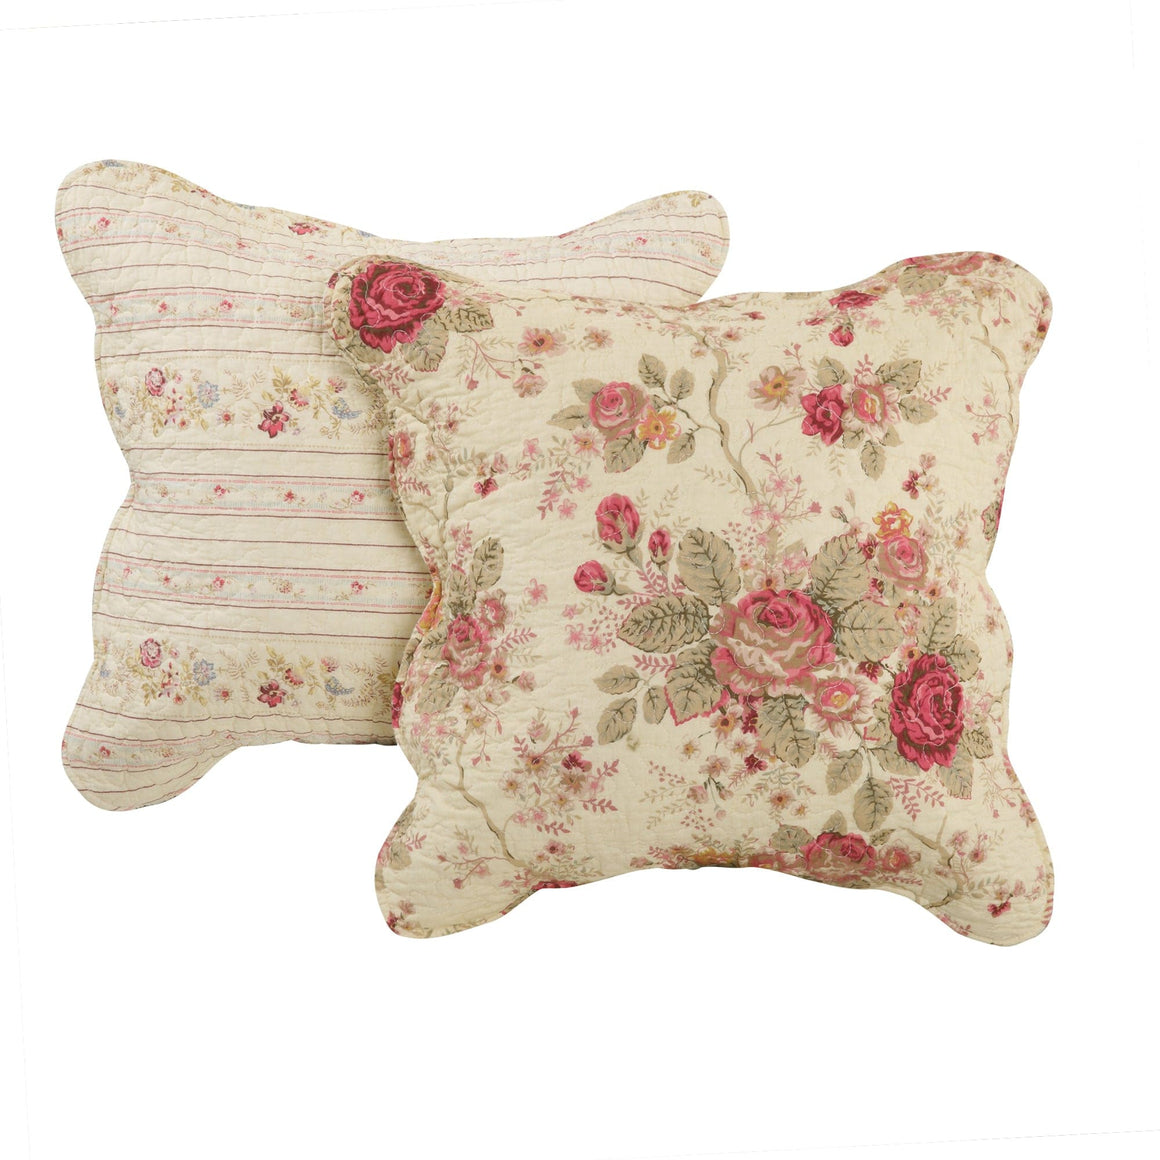 Antique Rose Decorative Pillow Pair